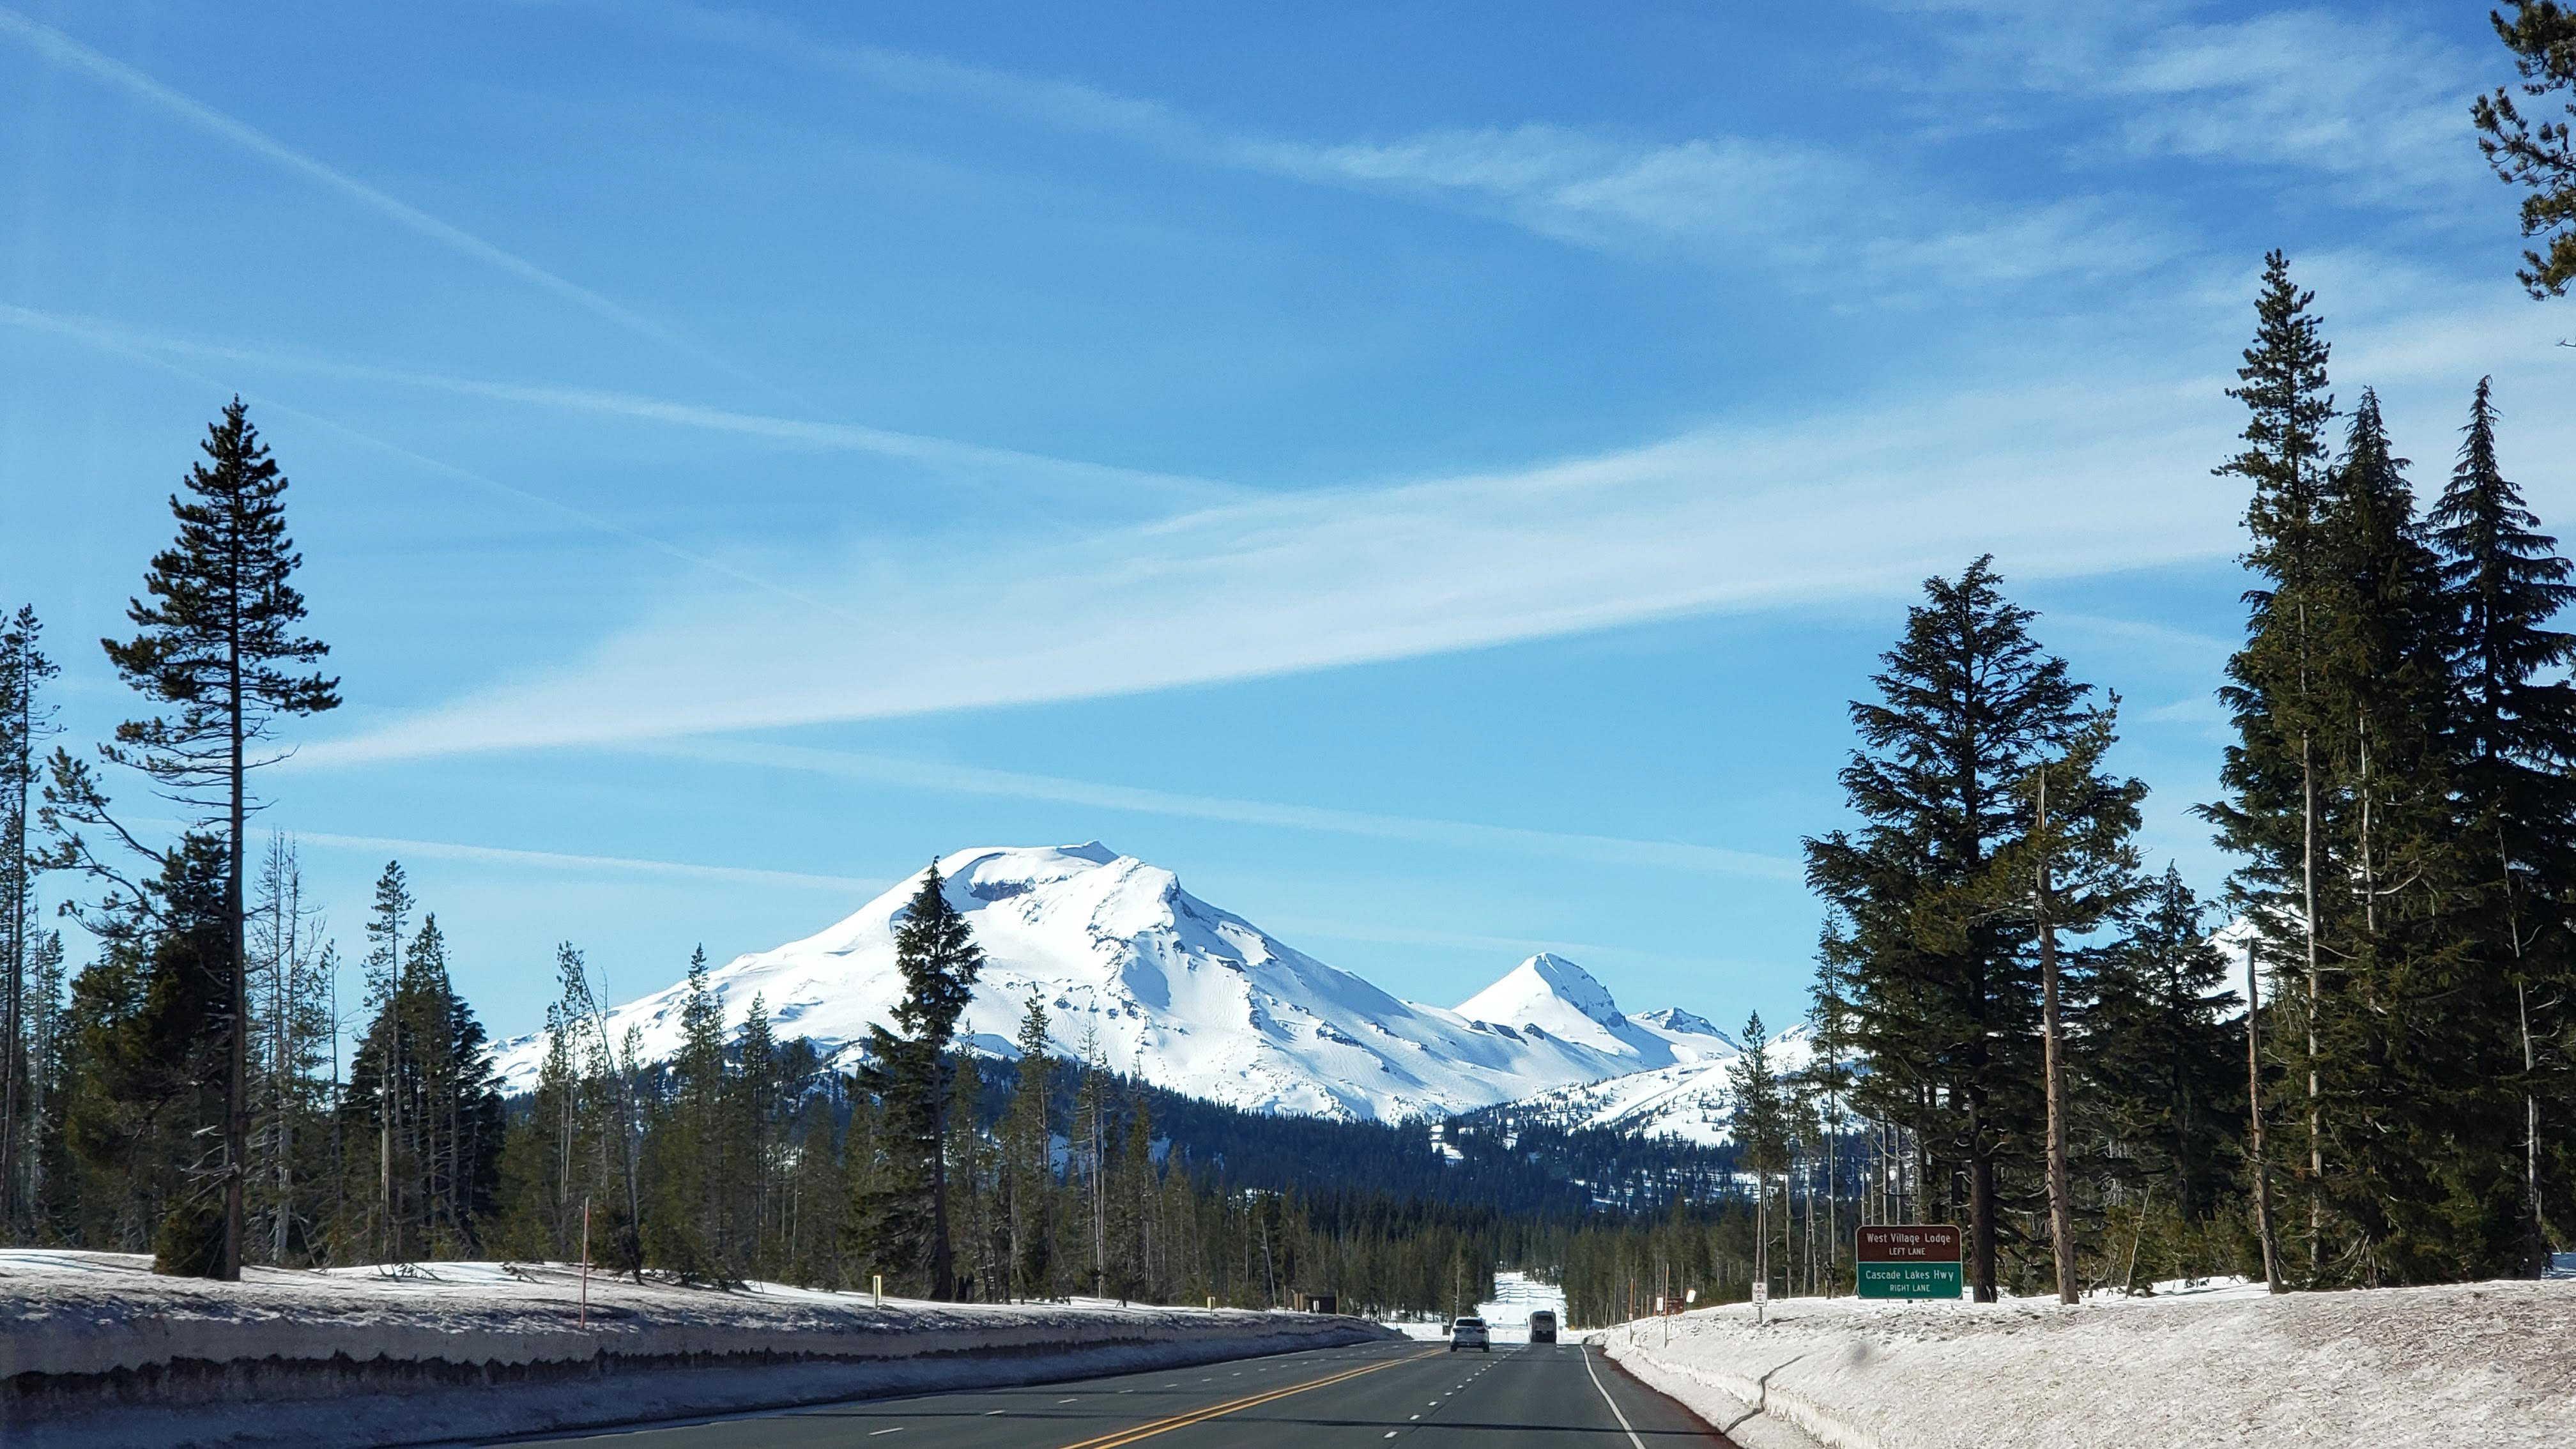 Our 2019 Journey to Alaska Episode 002, Bend, Oregon